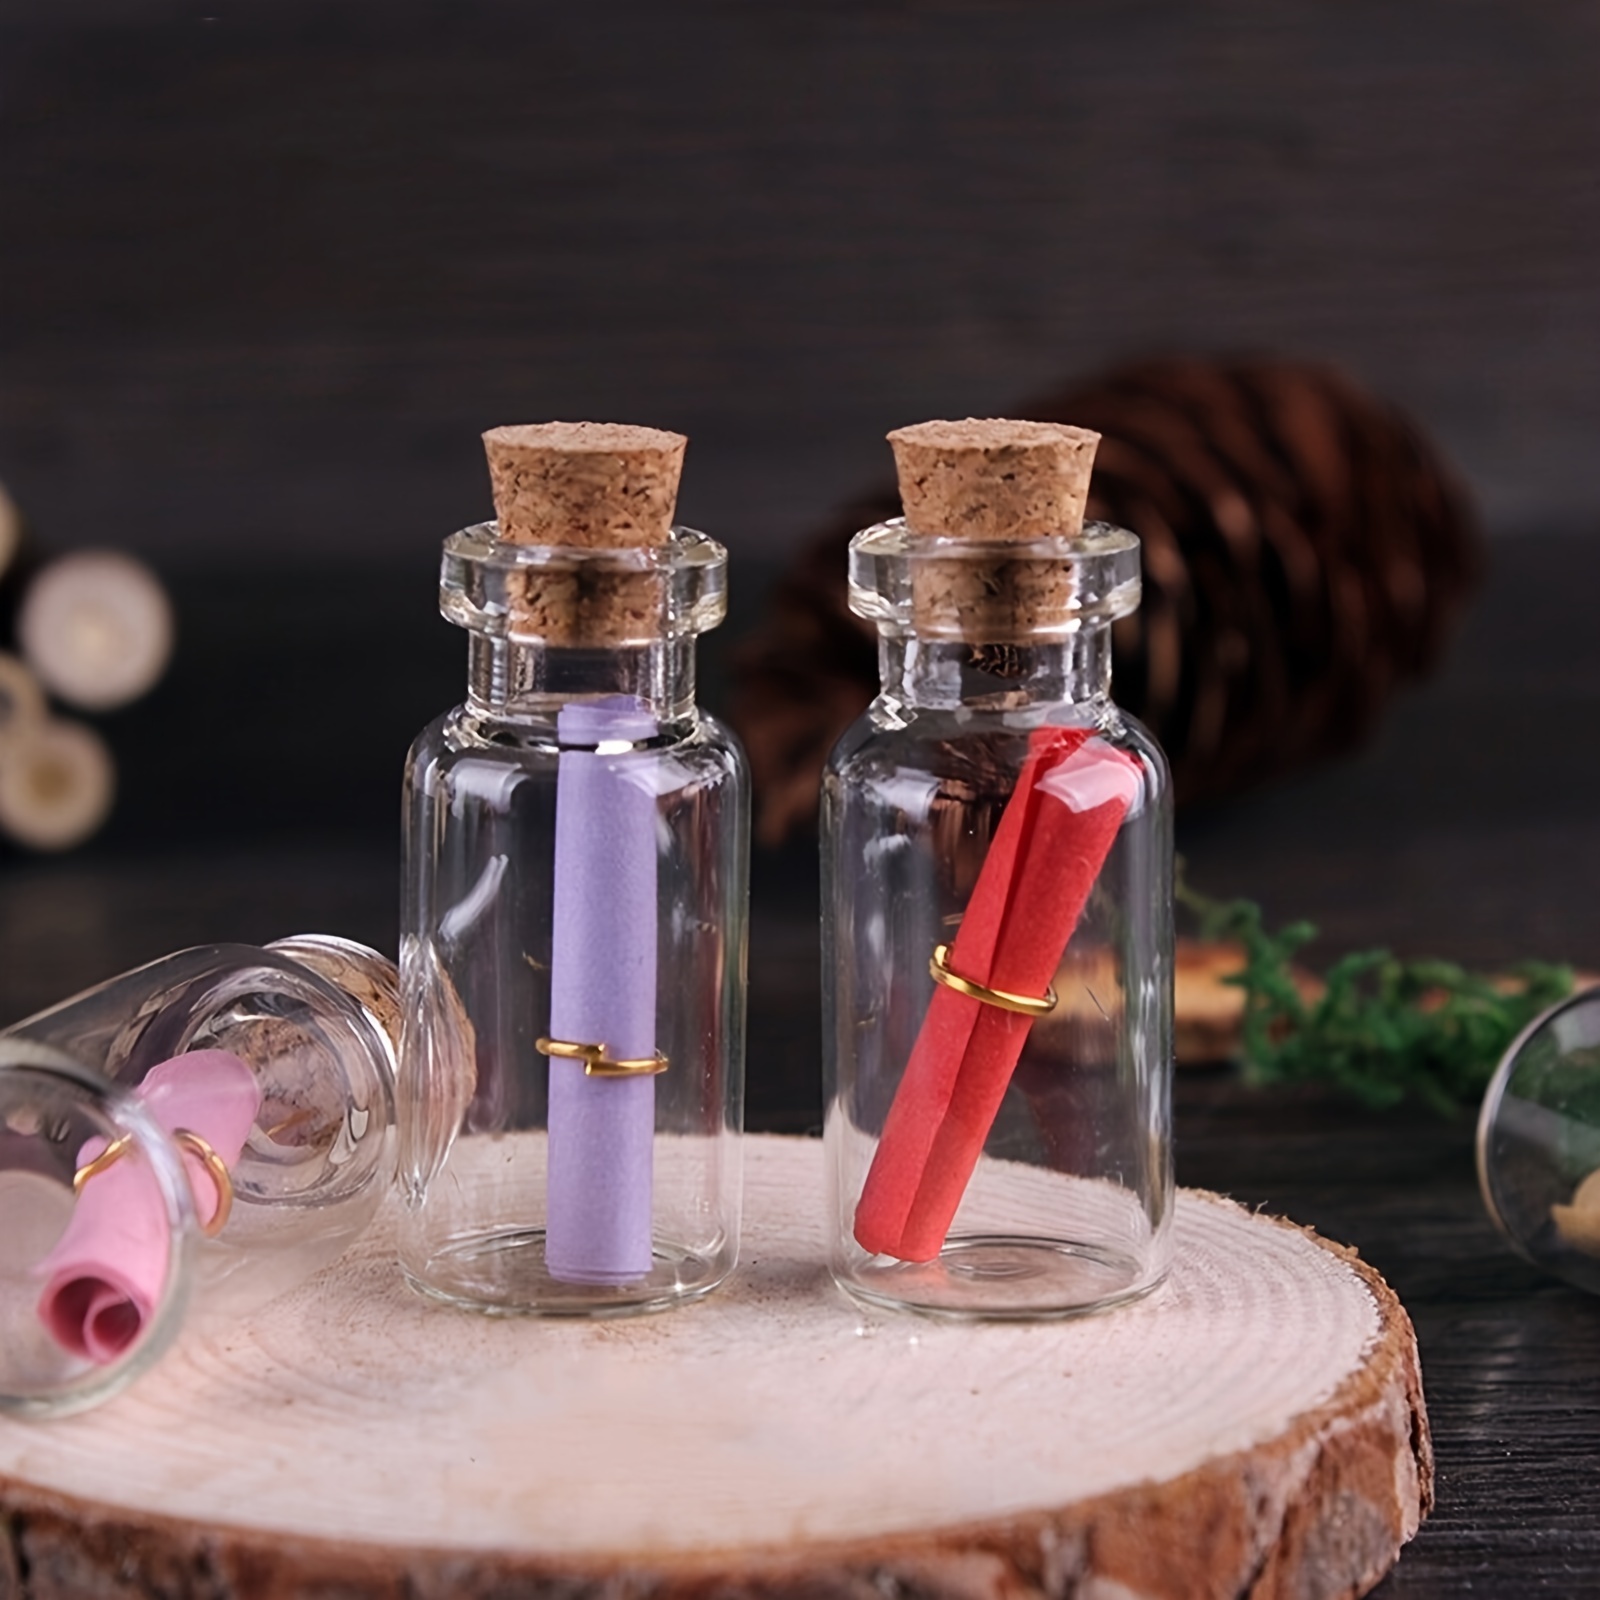 Mini botellas de cristal para guardar cuentas, adorno y mensajes.